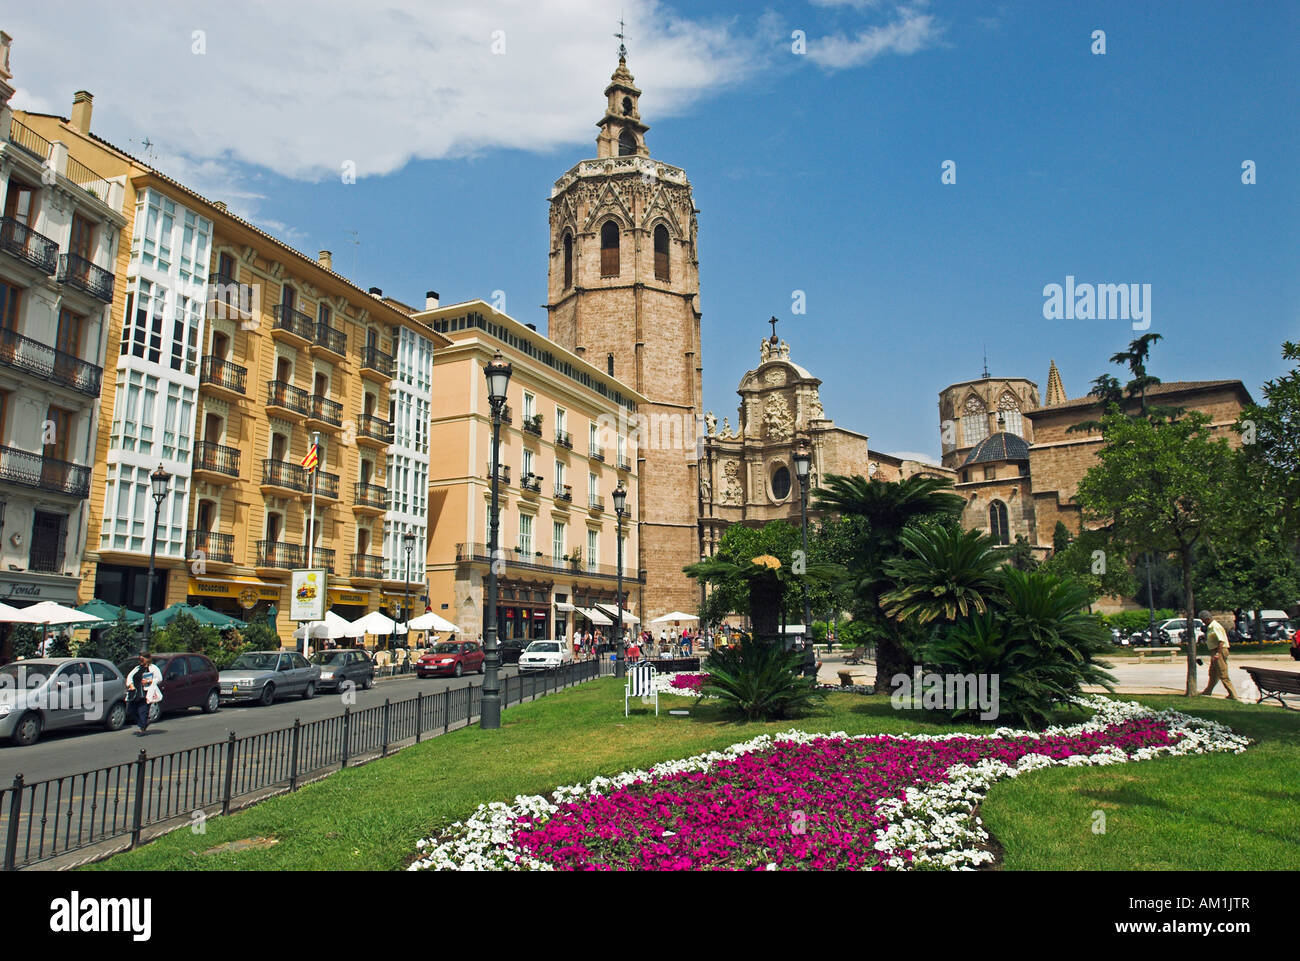 La Plaza de la Reina et la tour de la cathédrale, ville de Valence, Espagne, Europe Banque D'Images